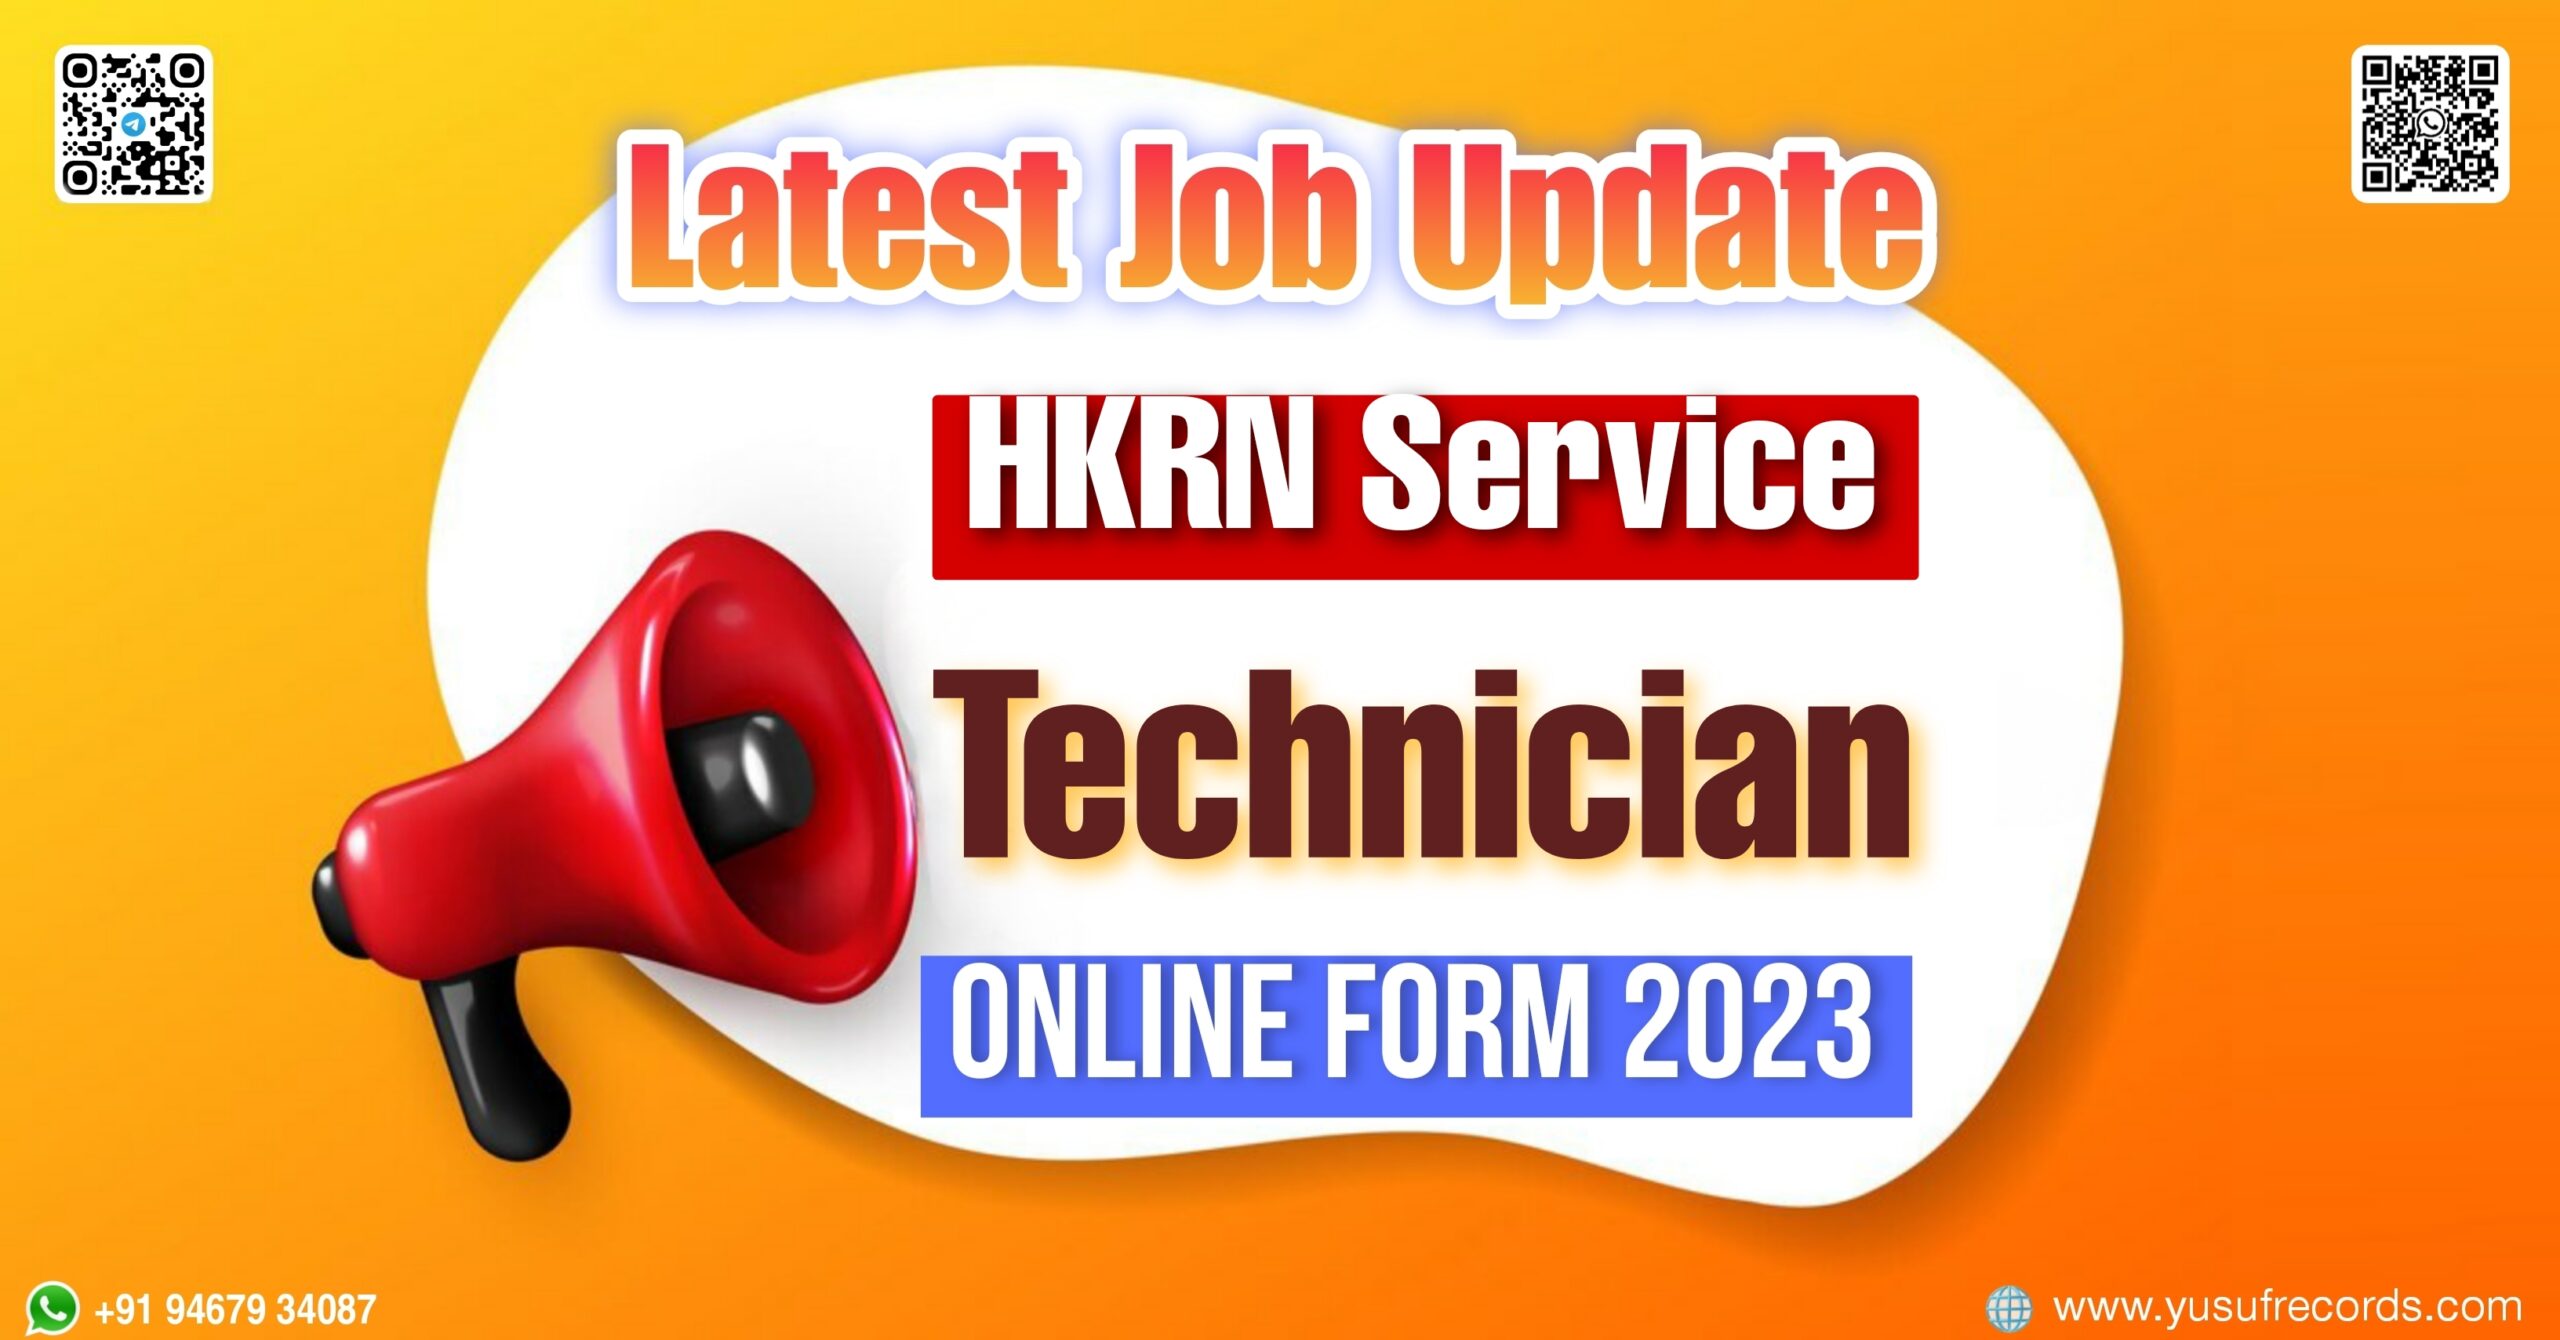 HKRN Service Technician Online Form 2023 yusufrecords.com